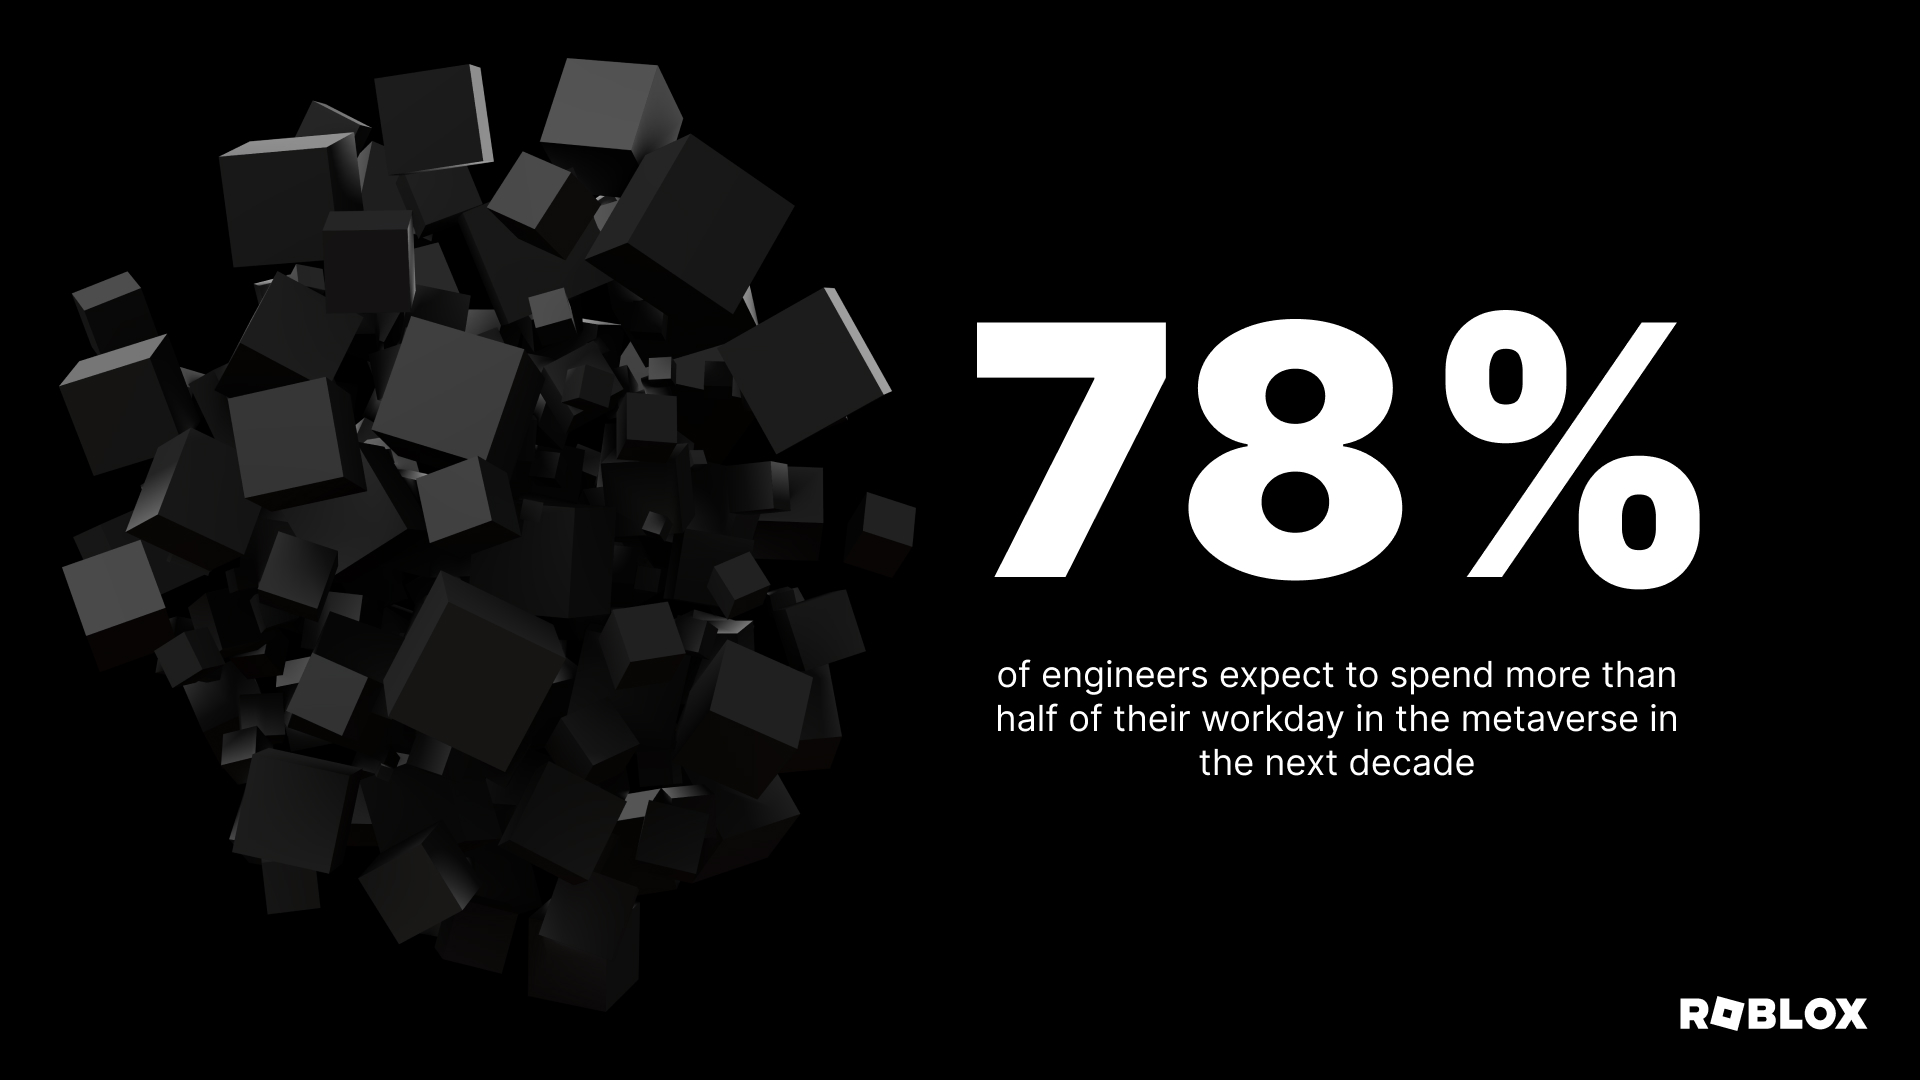 엔지니어의 78%는 향후 XNUMX년 동안 업무 시간의 절반 이상을 메타버스에서 보낼 것으로 예상합니다.